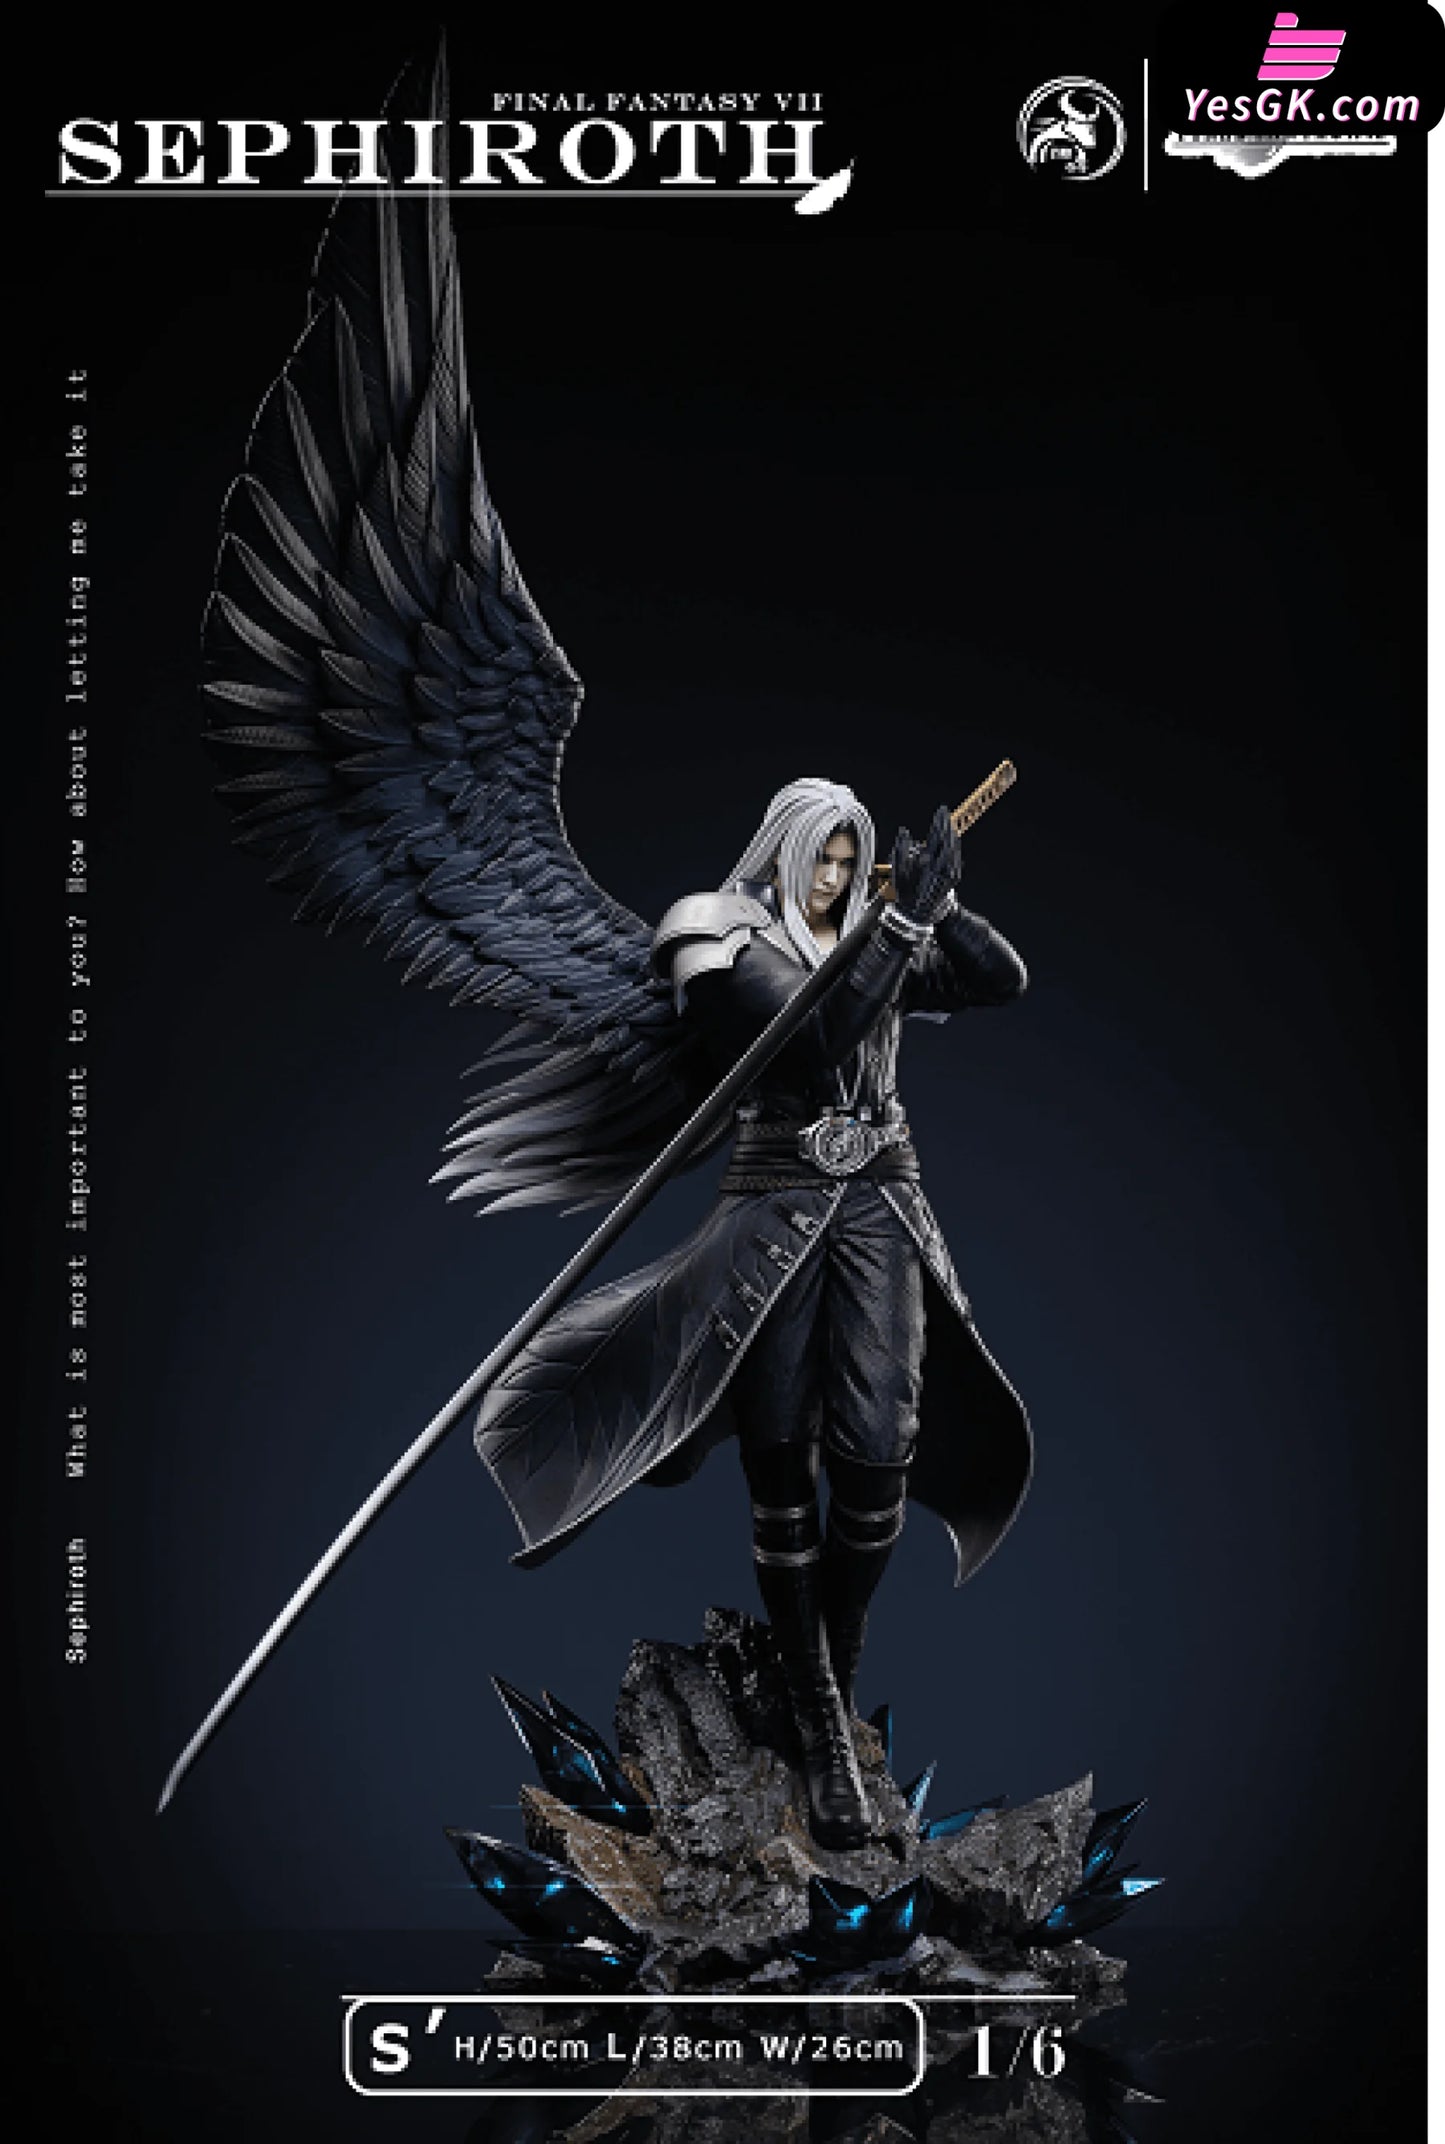 Final Fantasy 7 Sephiroth Statue - Ygnn Studio [Pre-Order]